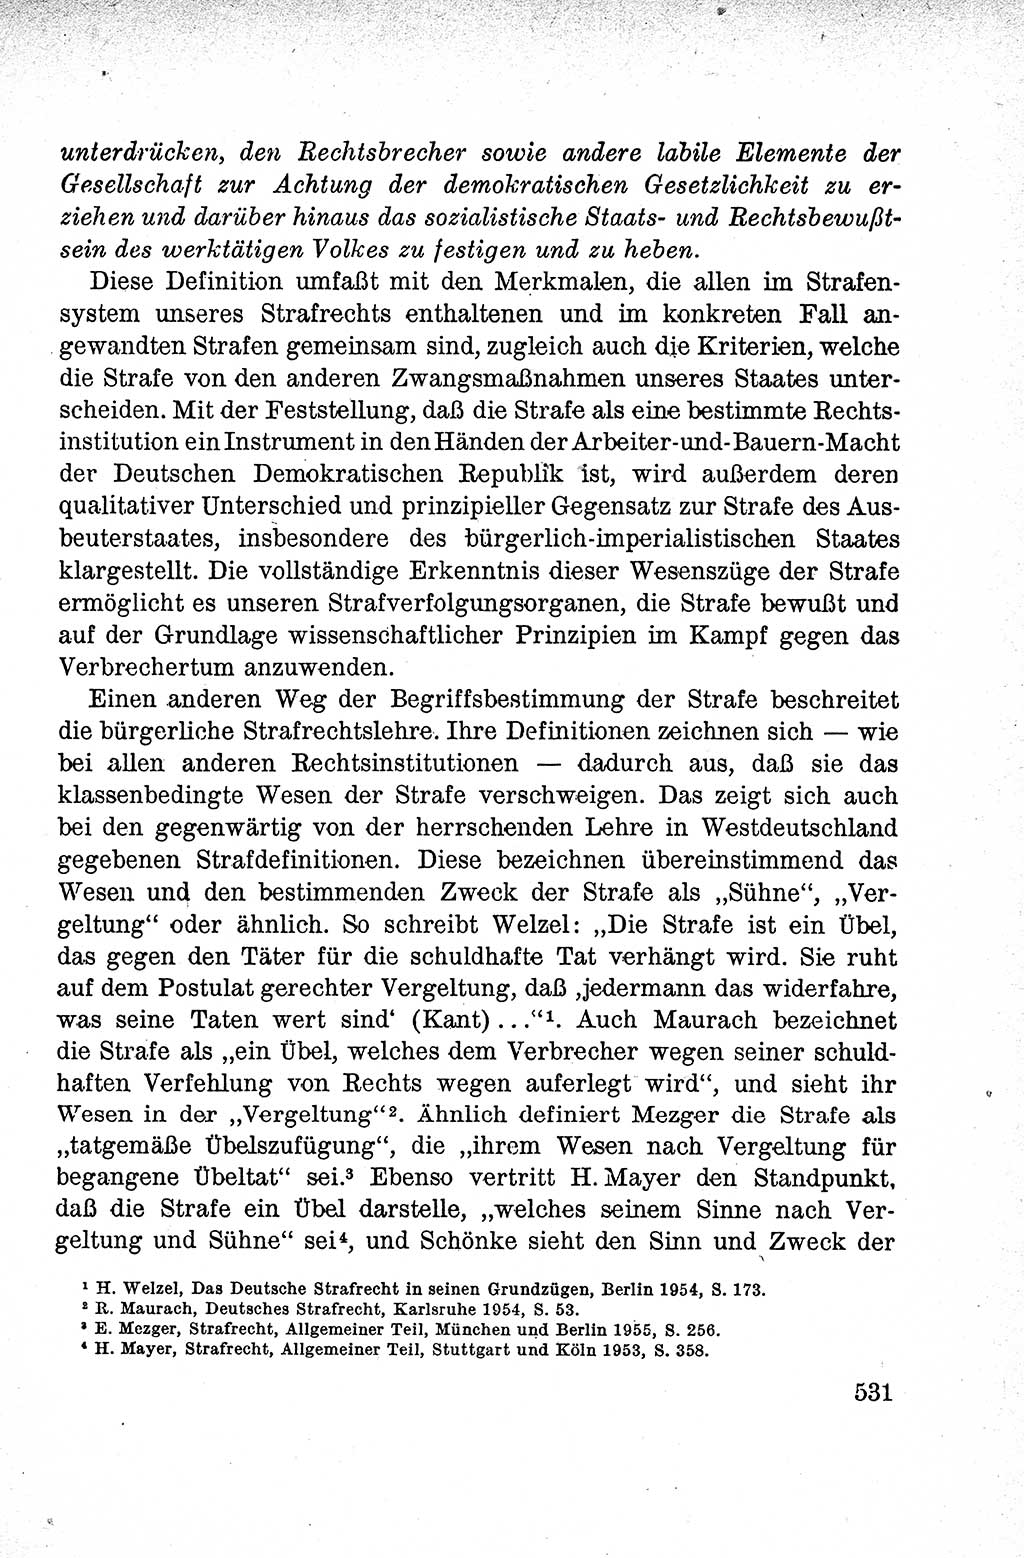 Lehrbuch des Strafrechts der Deutschen Demokratischen Republik (DDR), Allgemeiner Teil 1959, Seite 531 (Lb. Strafr. DDR AT 1959, S. 531)